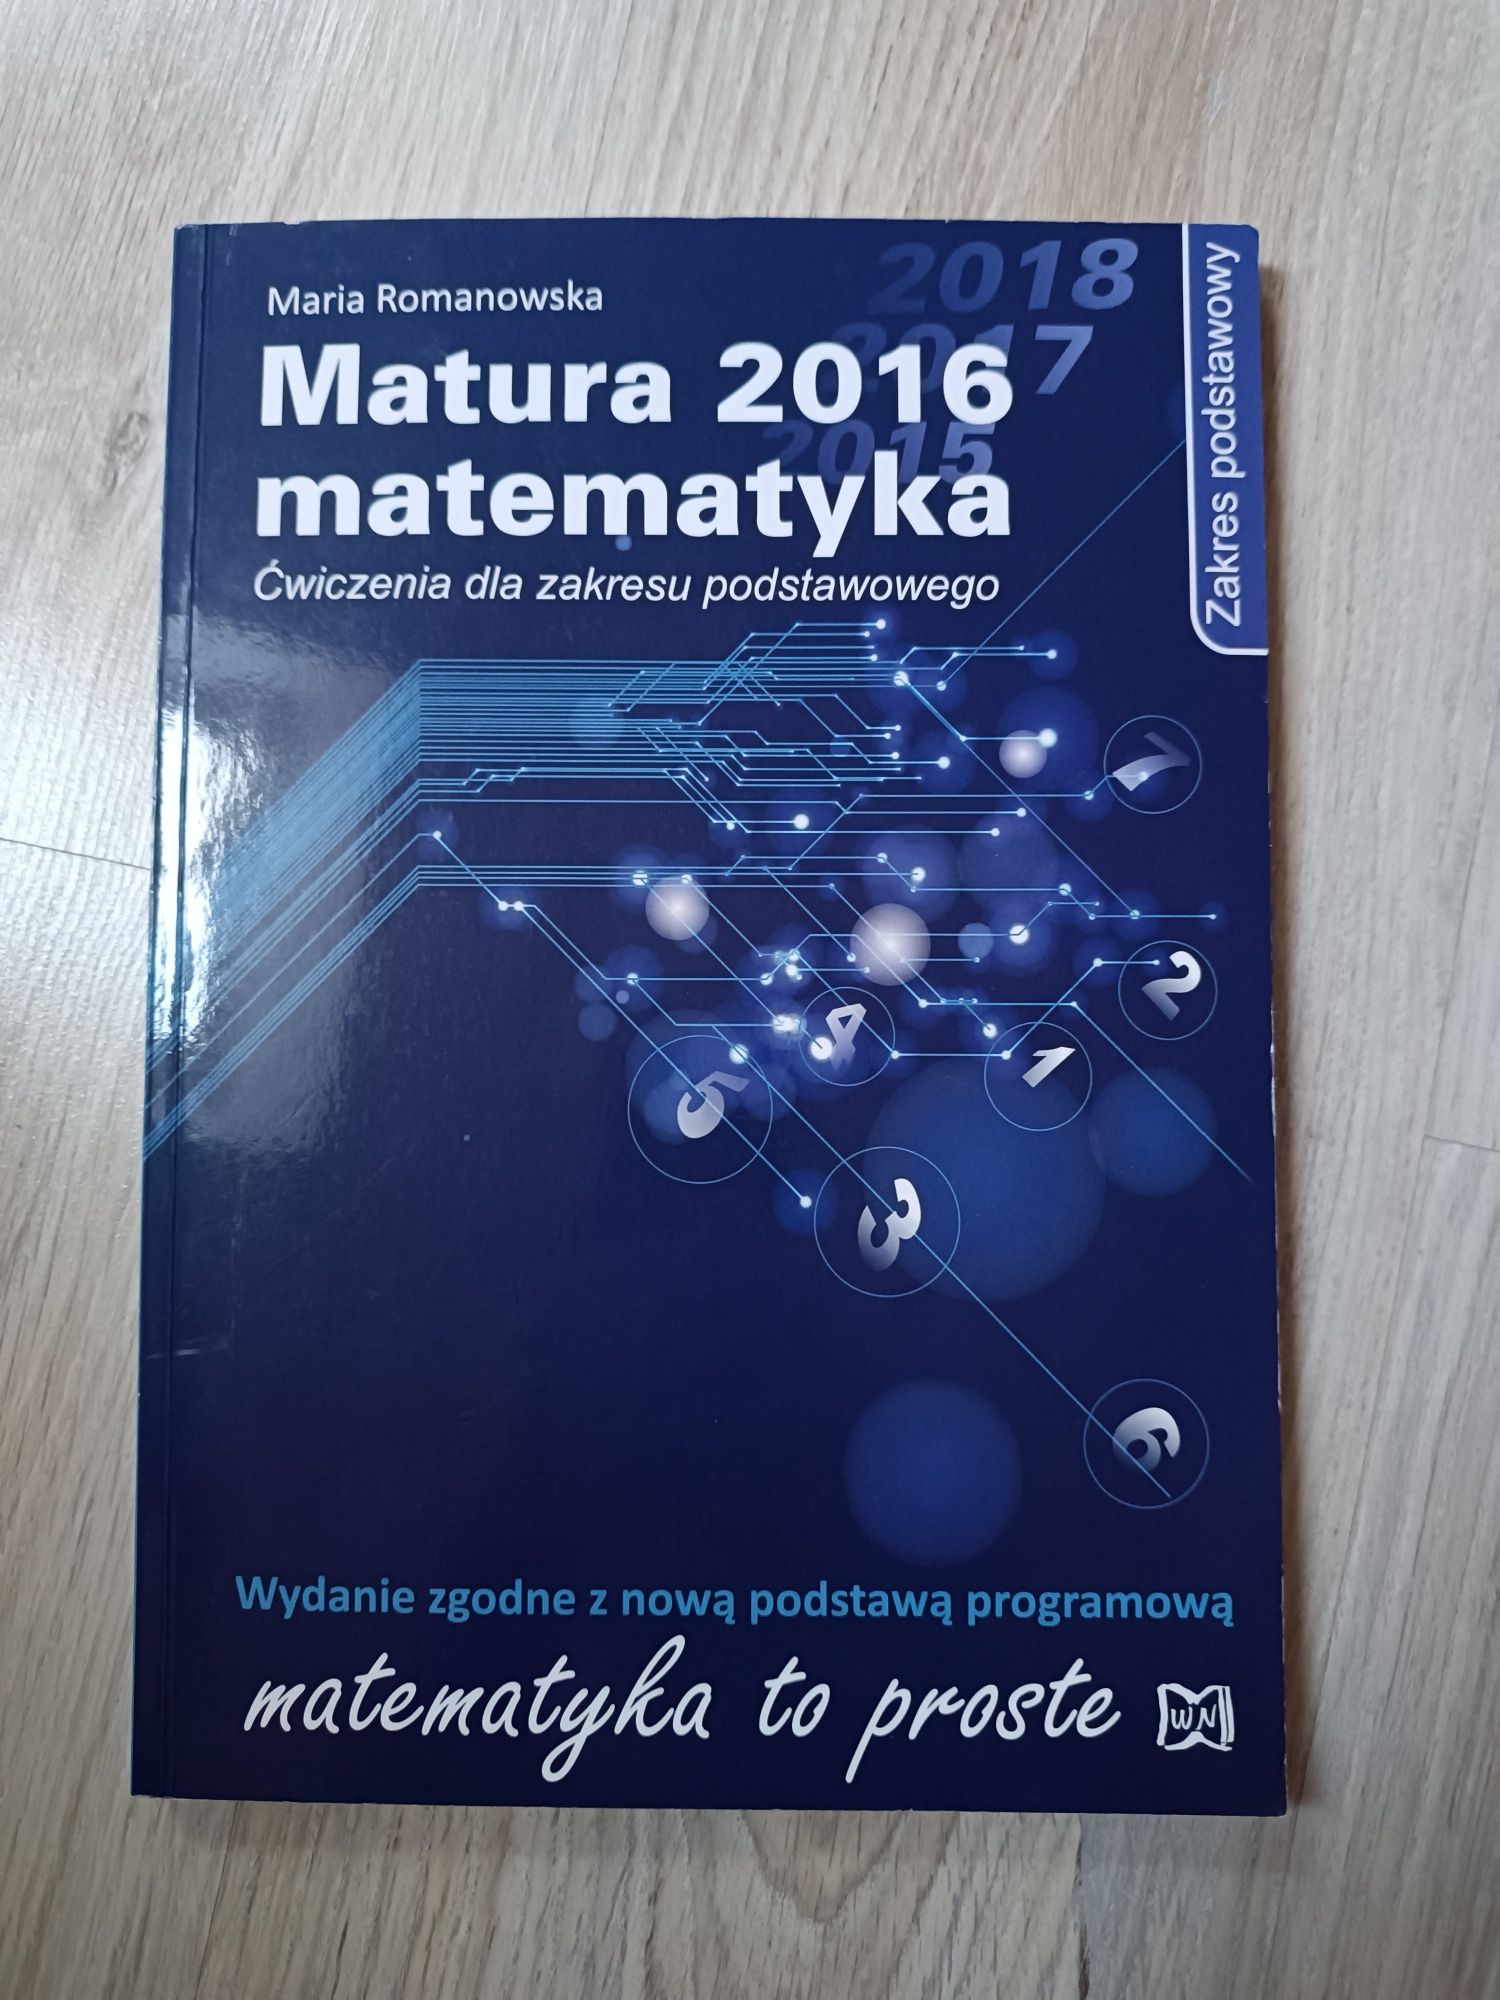 Matura 2016 matematyka Maria Romanowska